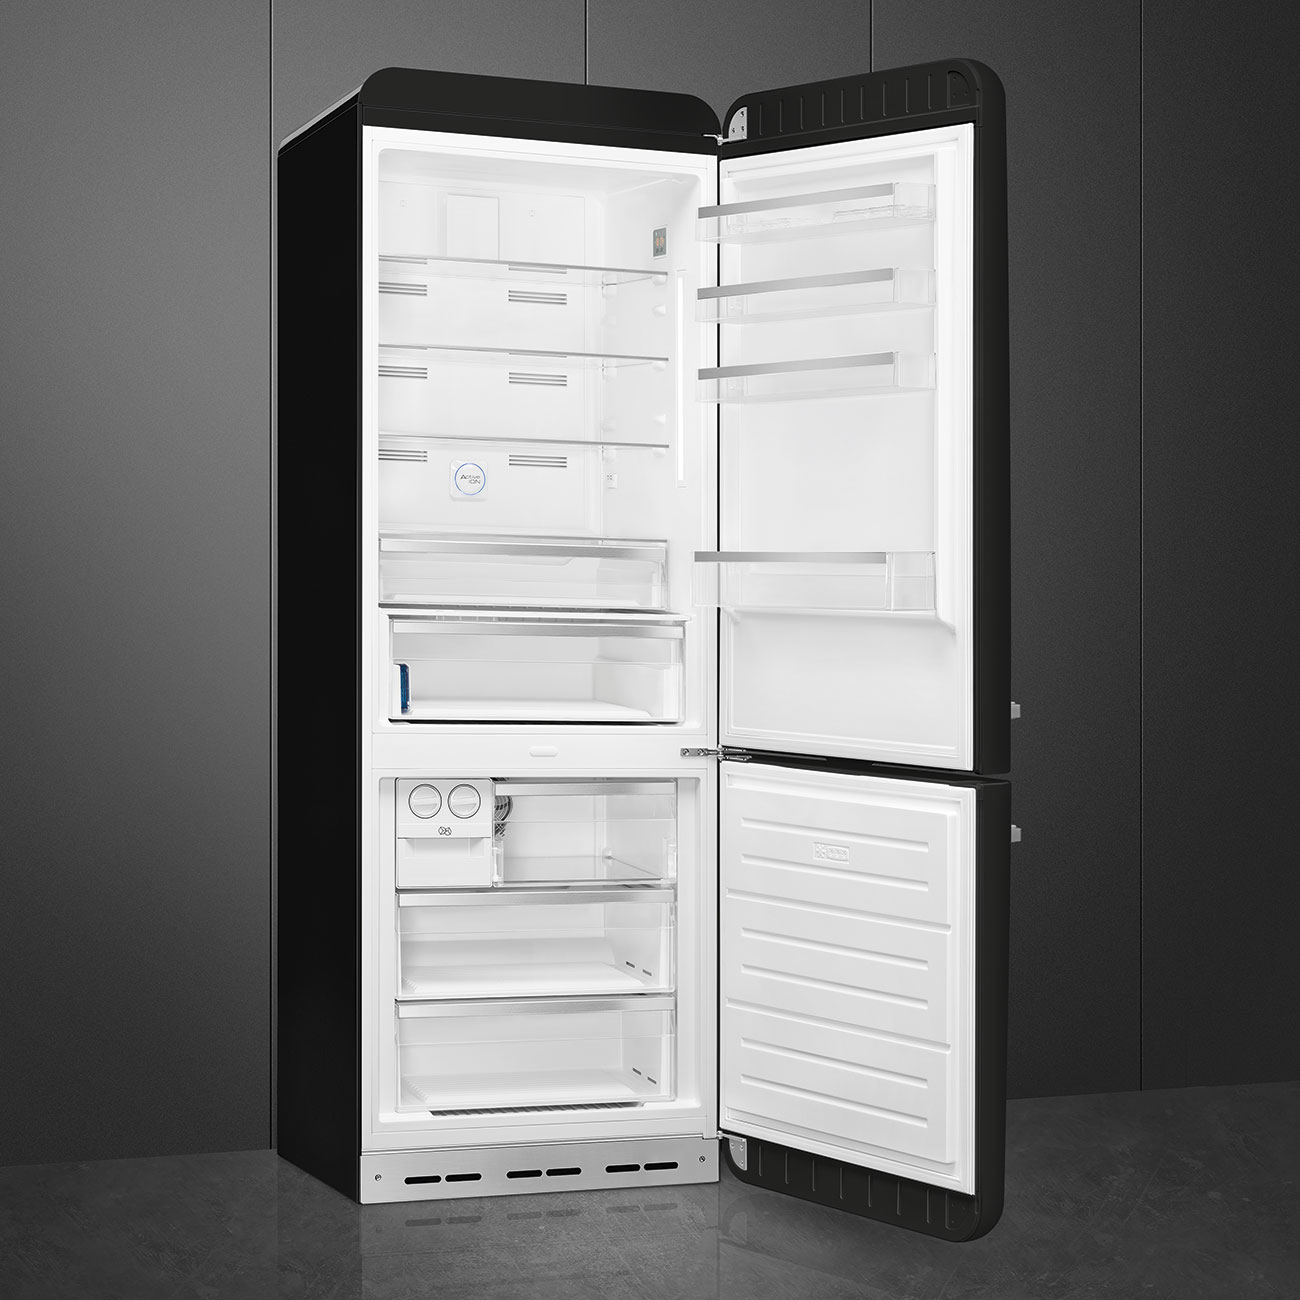 Smeg FAB38RBL5 Stand-Kühlschrank Schwarz